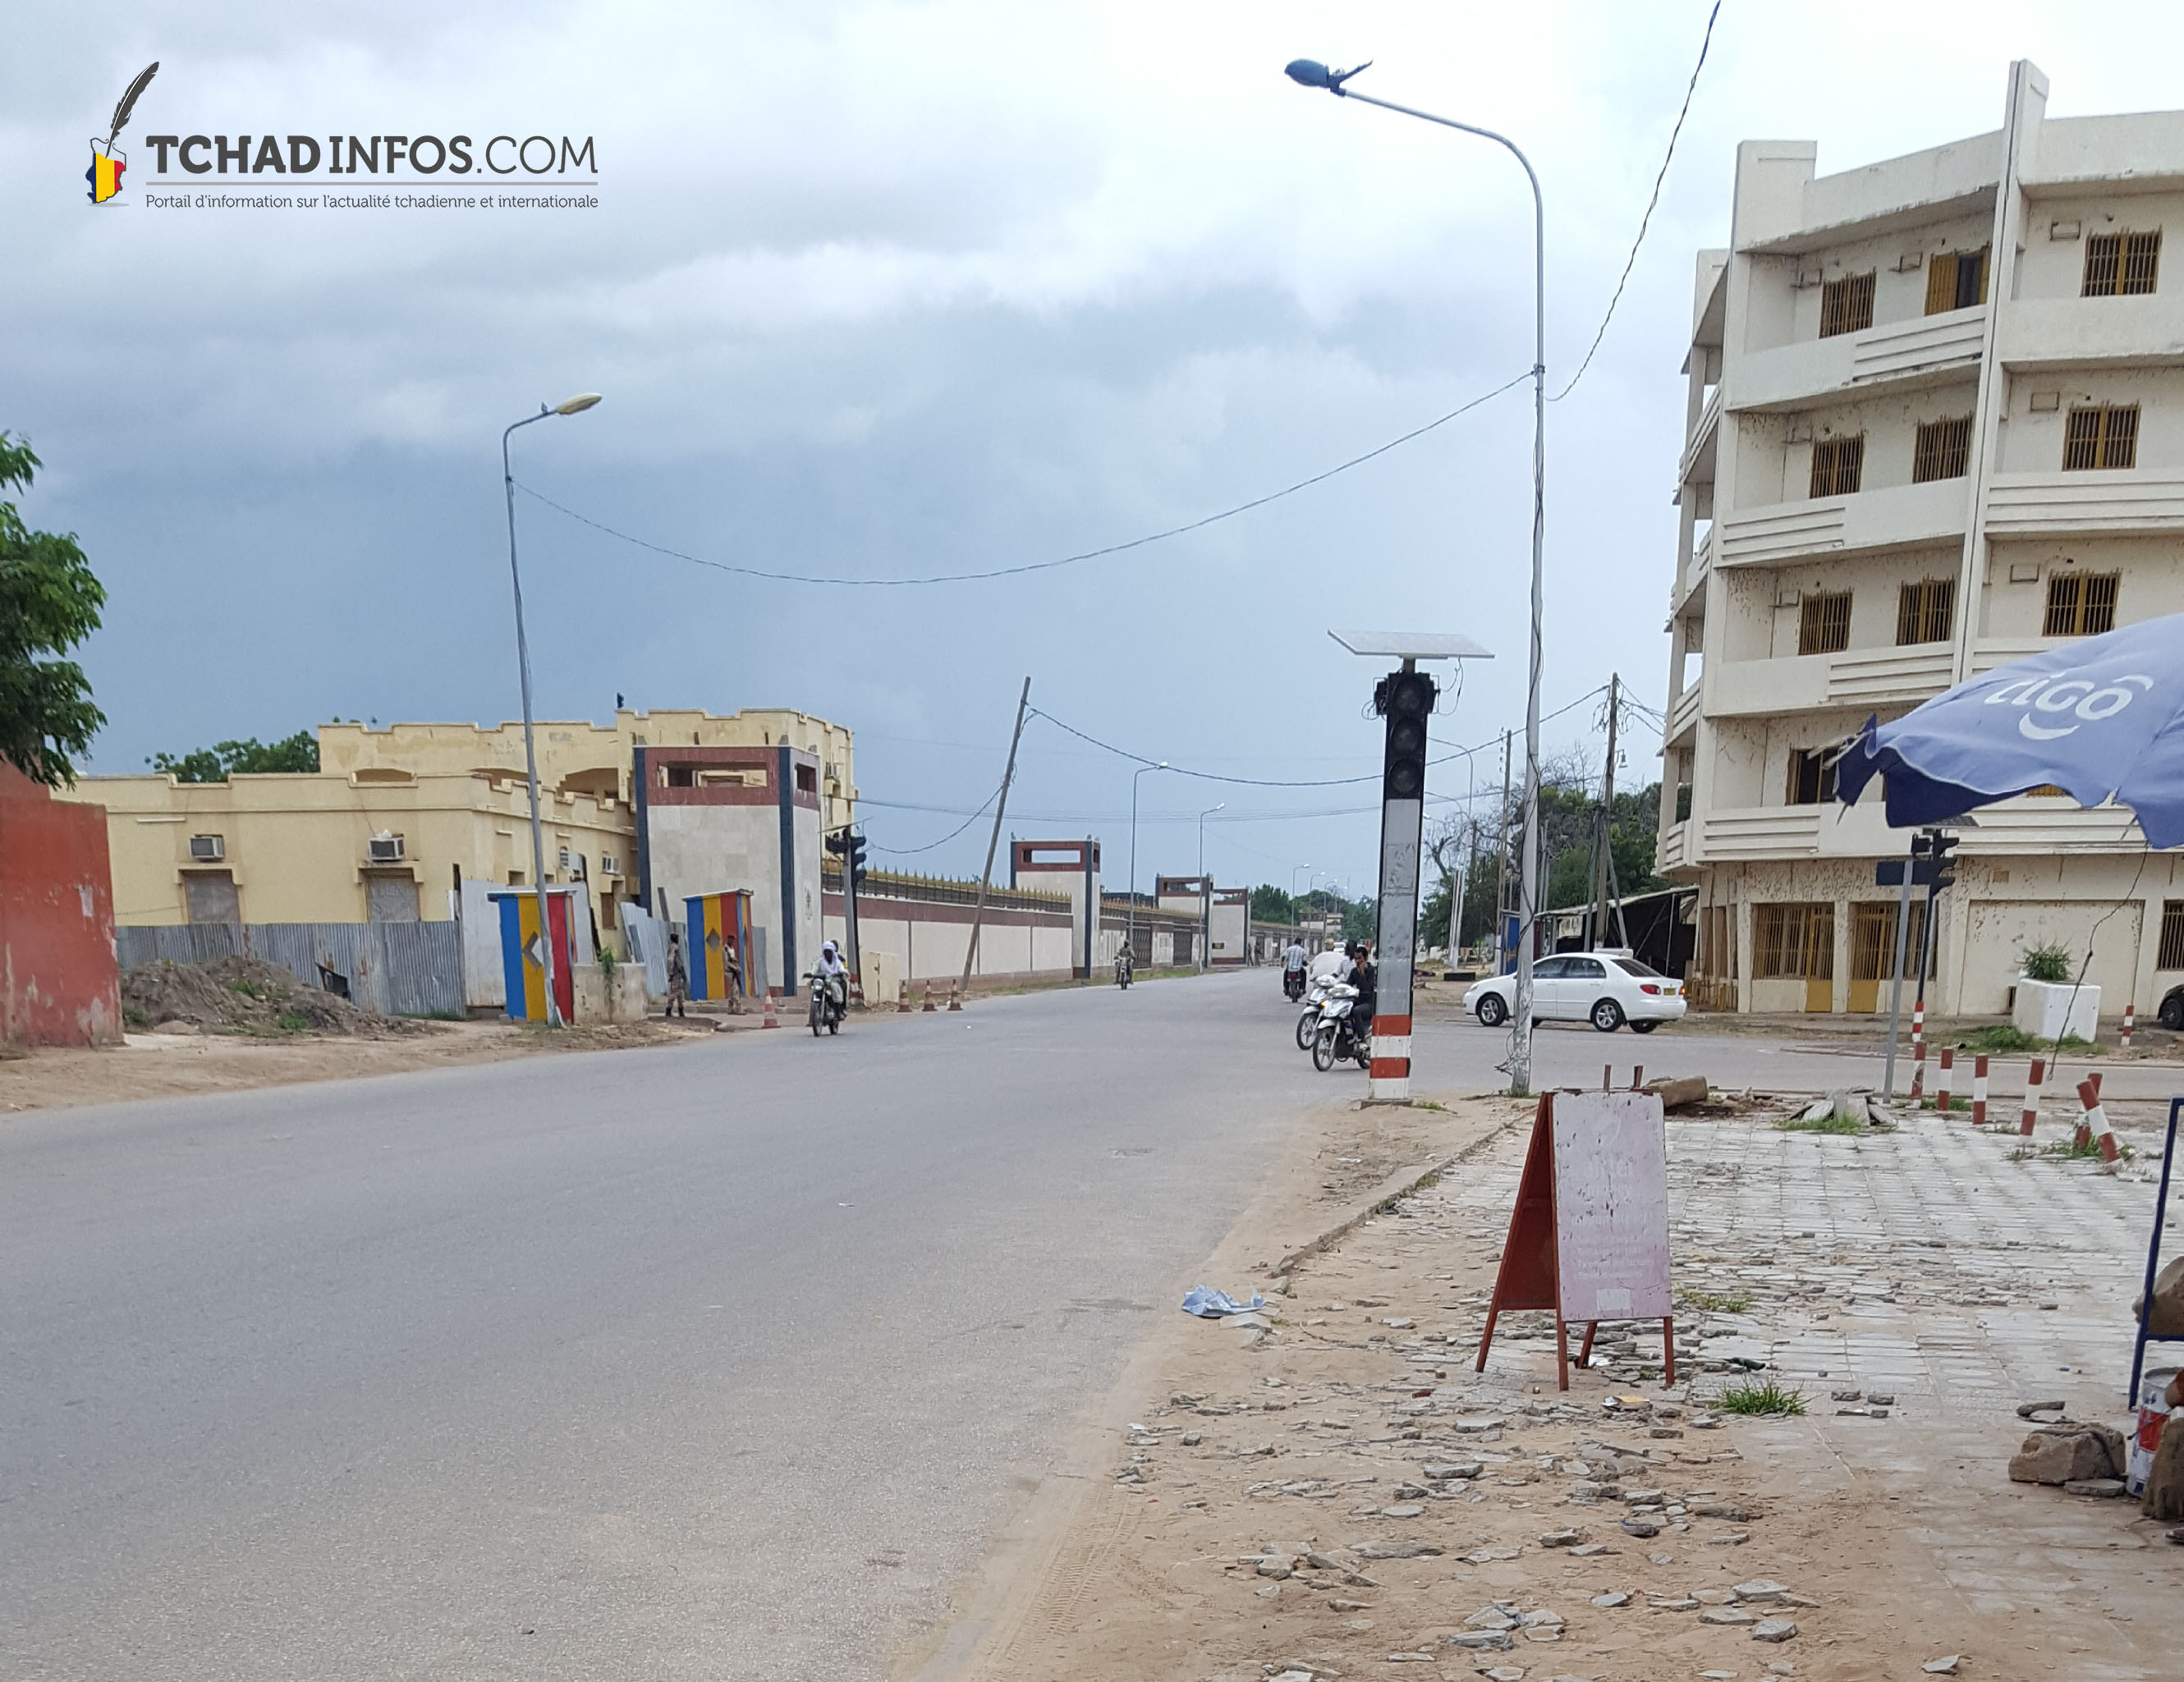 Tchad : la rue passant devant la Présidence est à nouveau ouvert dans les deux sens